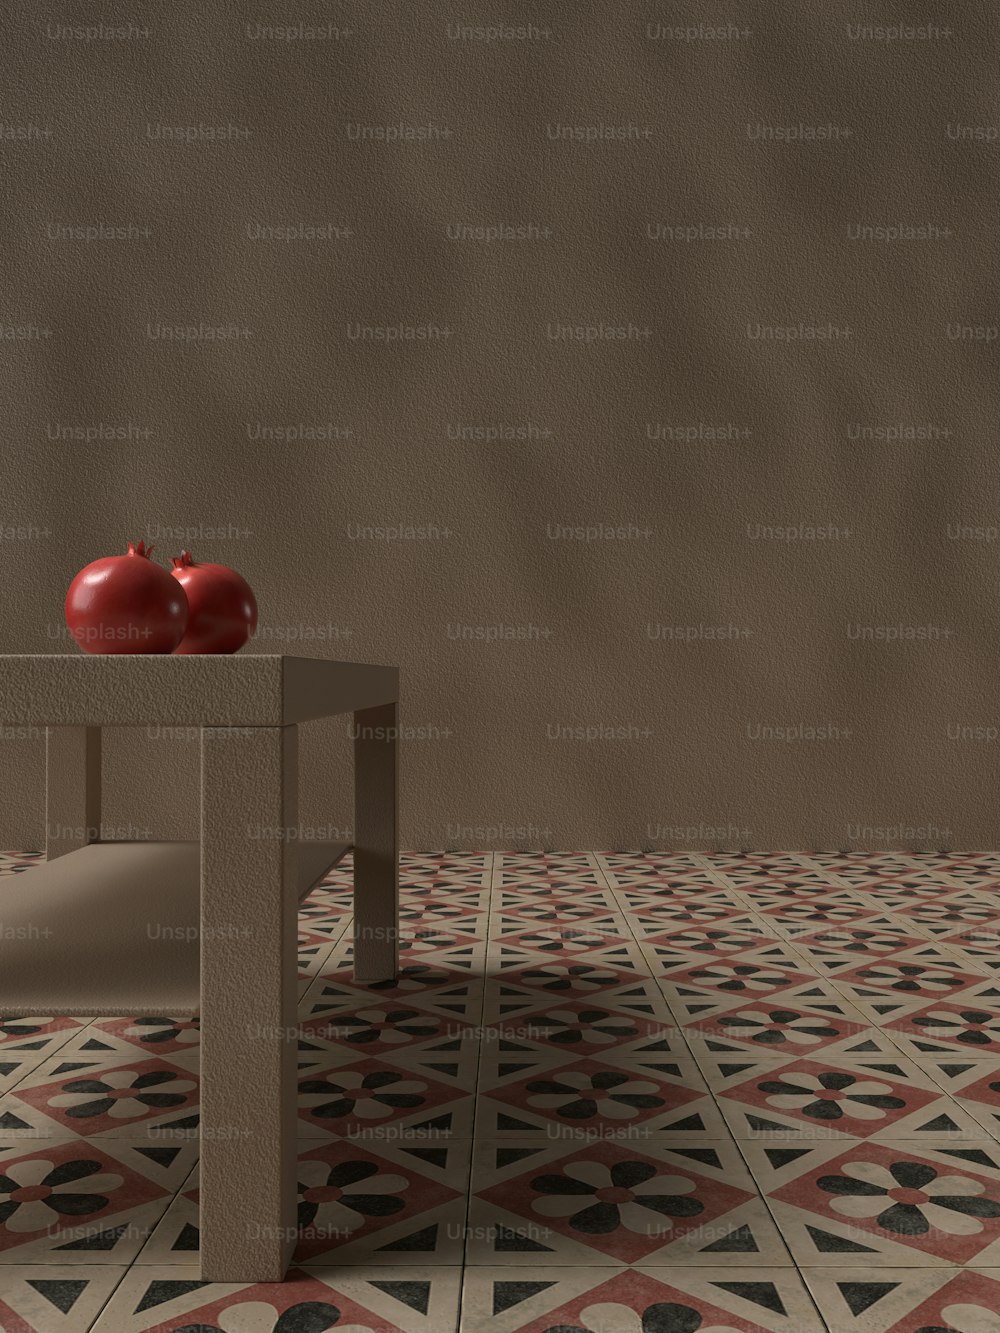 ein Tisch mit zwei Äpfeln darauf